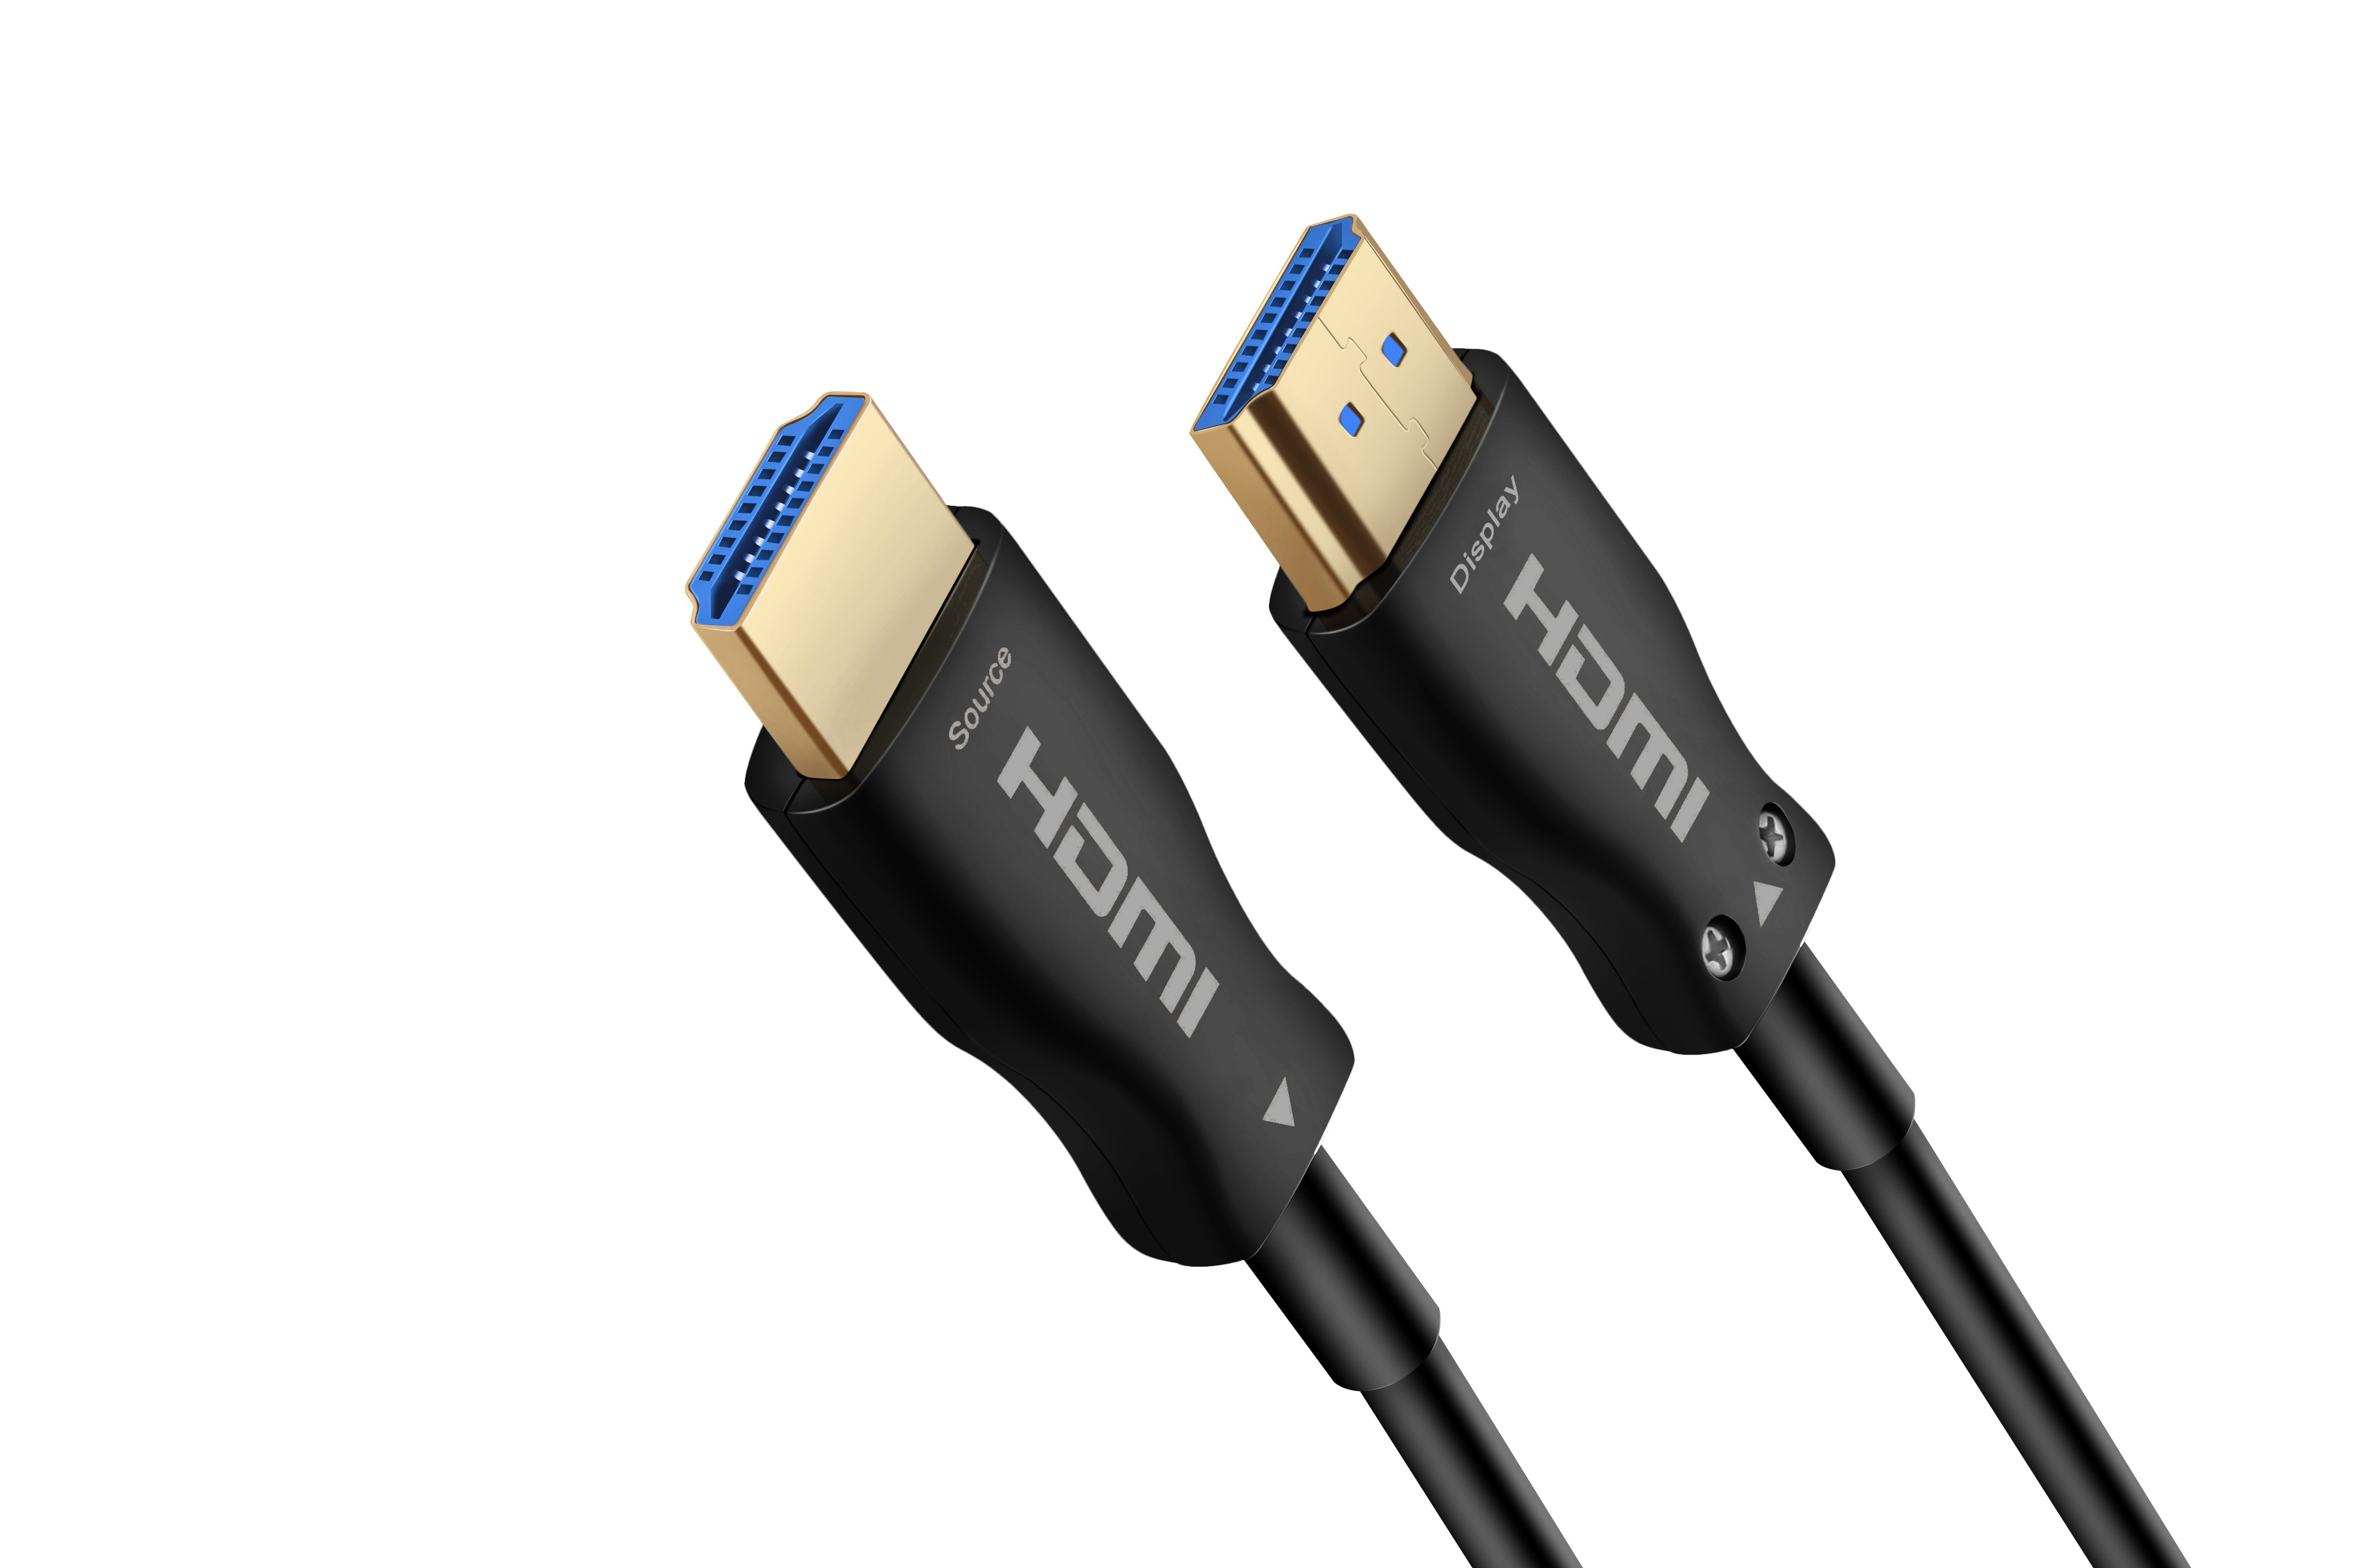  HDMI 2.0 4K active fiber black blue core